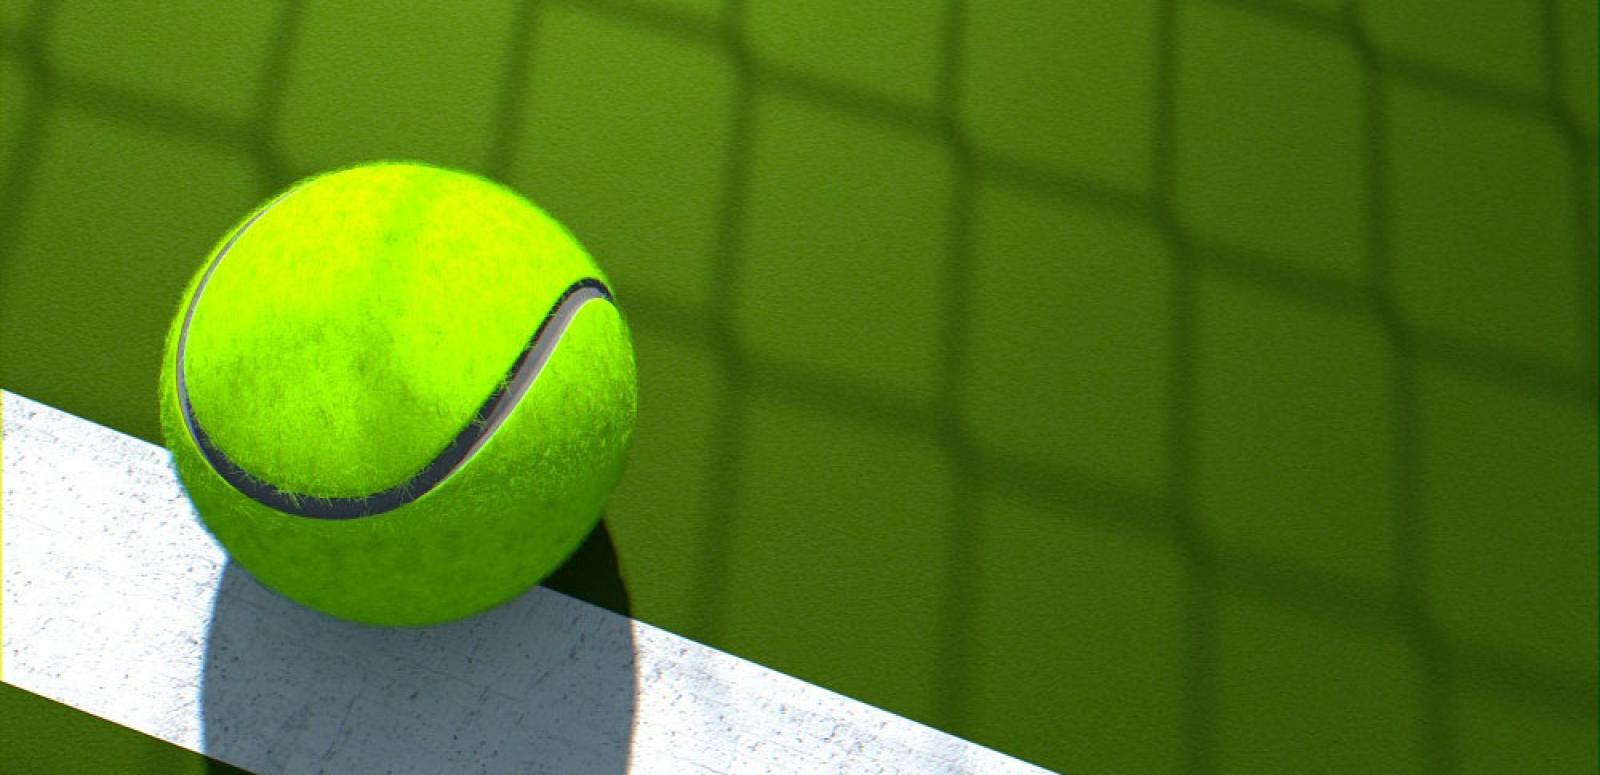 Close up of a tennis ball on a tennis court.